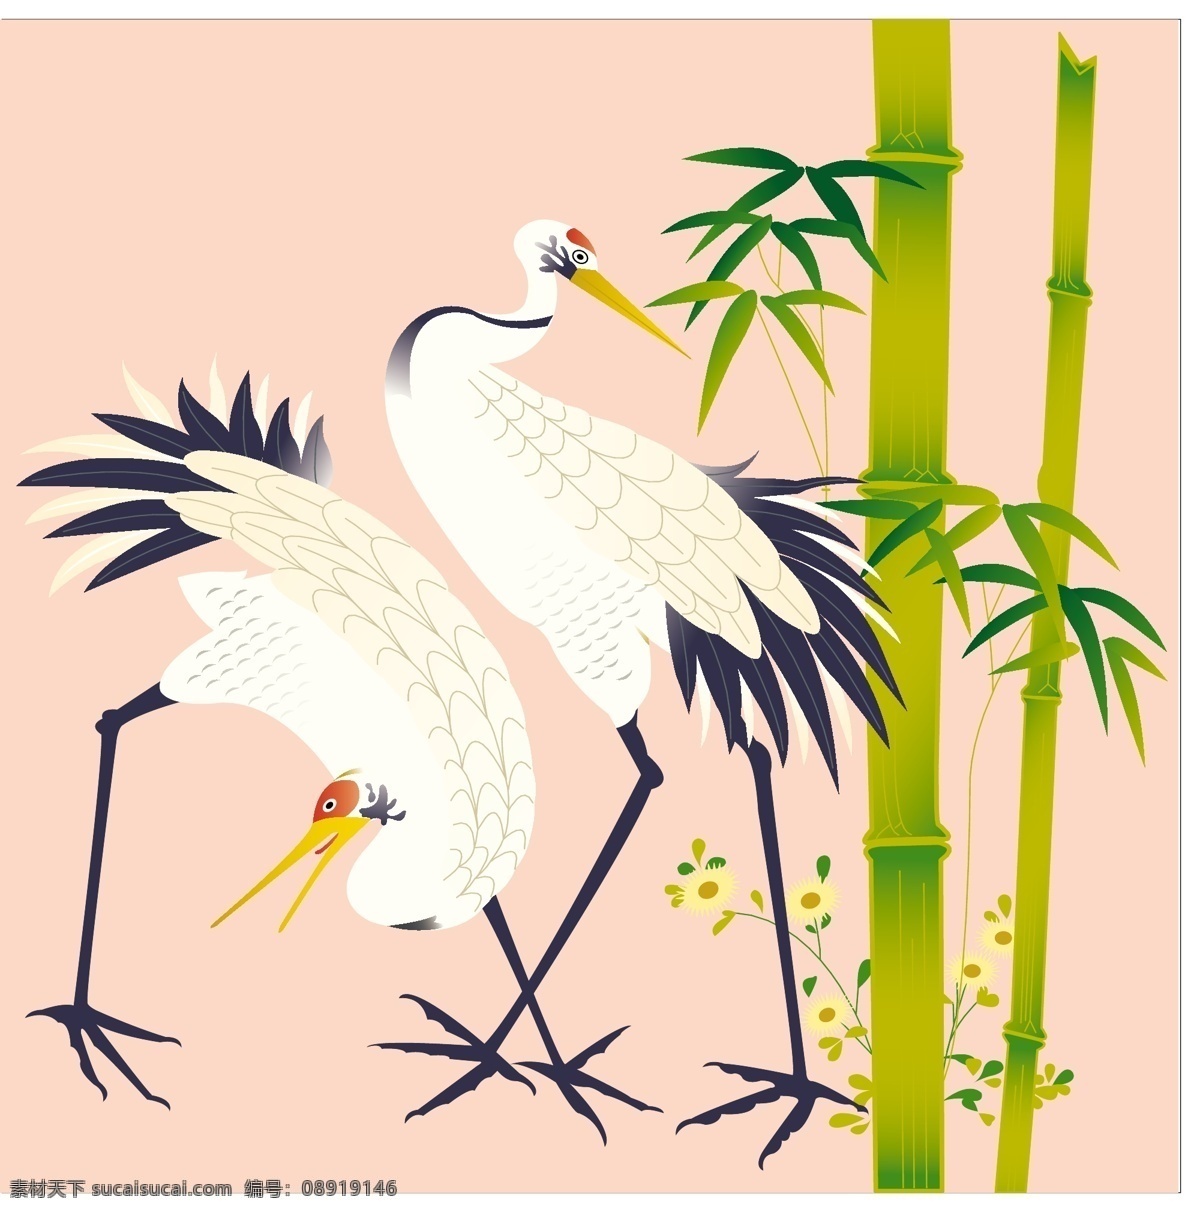 竹子 白鹤 装饰 图 设计素材 鸟 矢量素材 装饰素材 设计元素 装饰图案